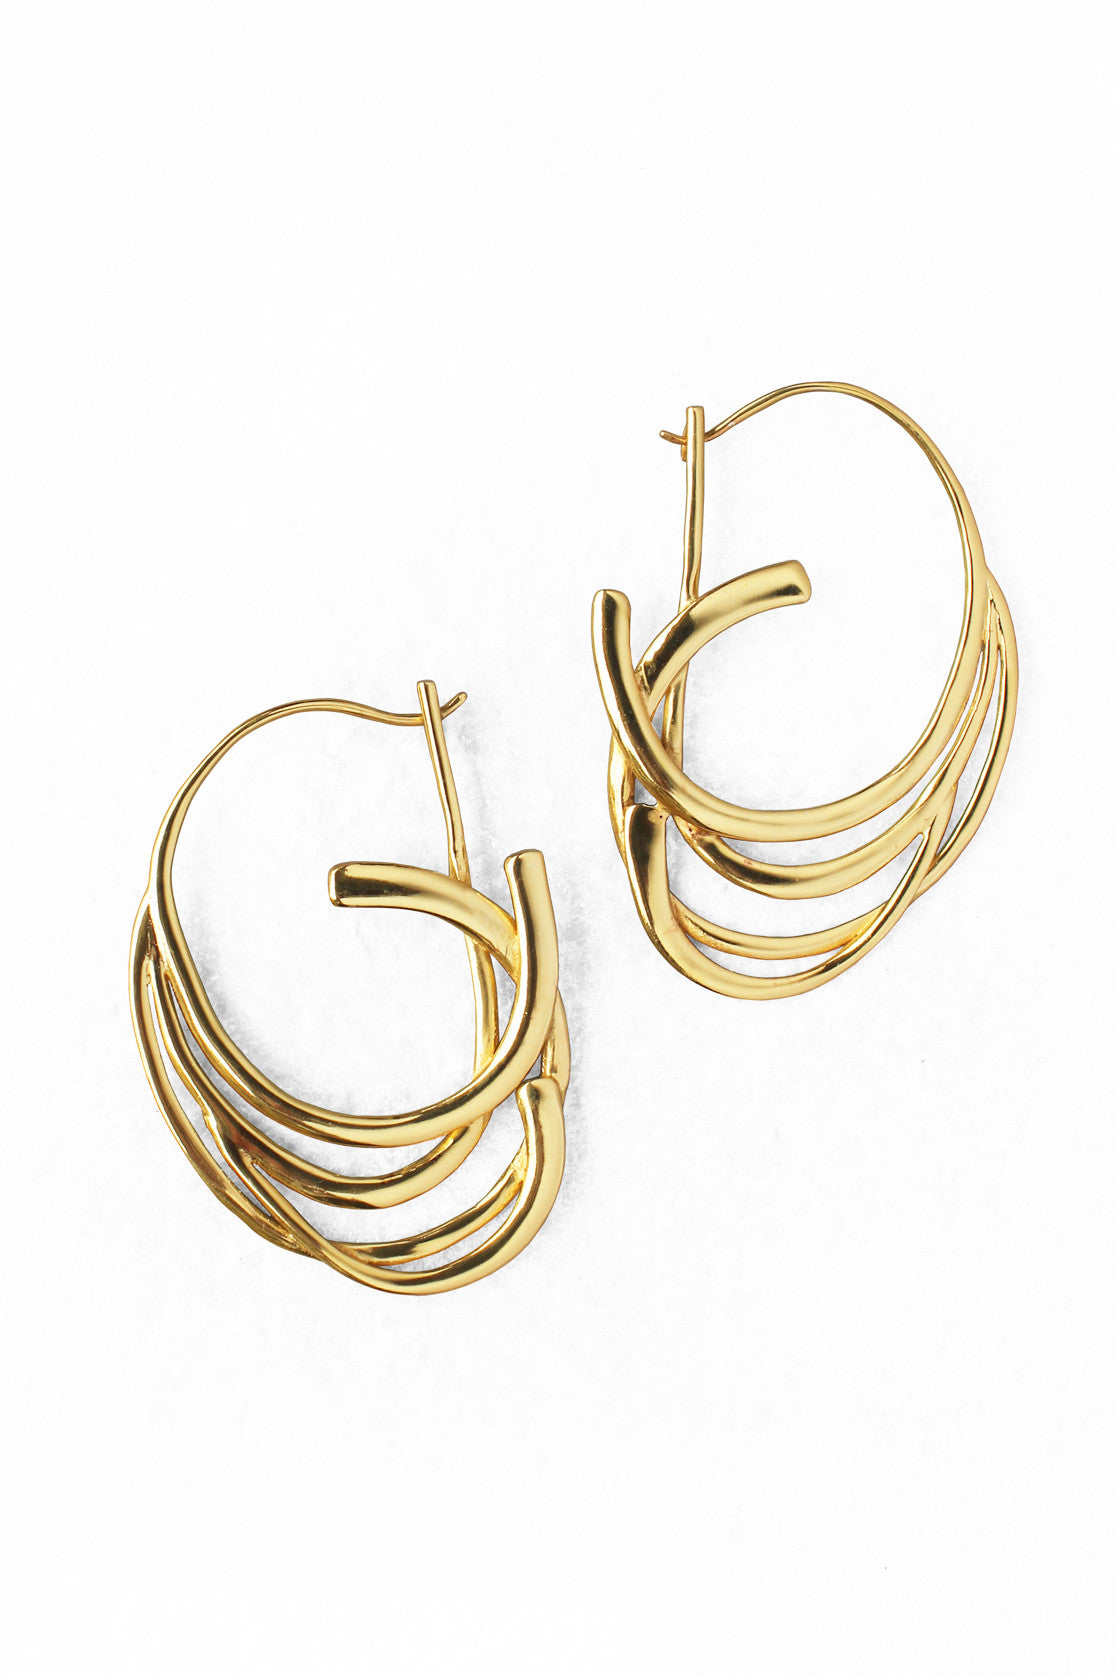 Ujjvala Nivara Gold Hoop Earrings